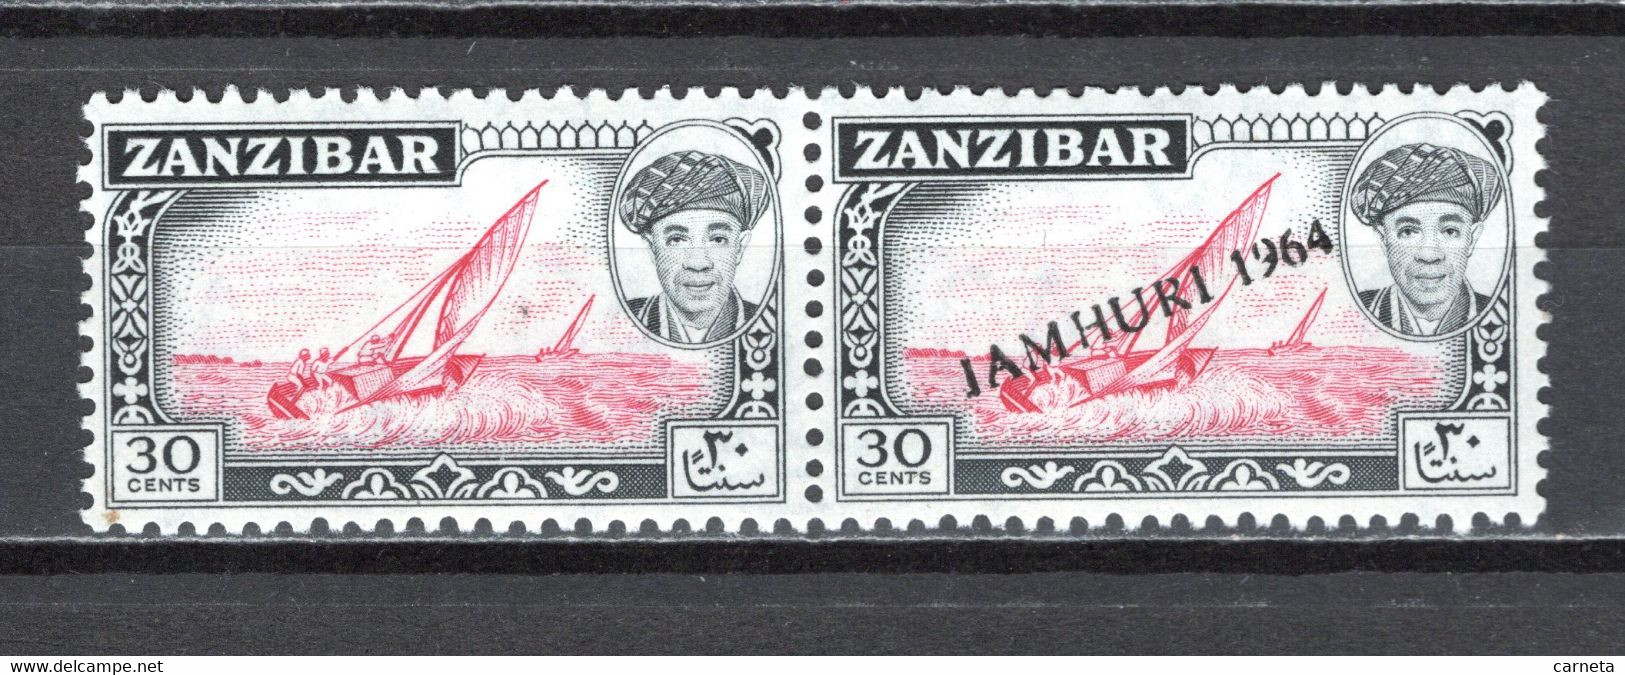 ZANZIBAR    N° 267 TENANT A 246 SURCHARGE TENANT A NON SURCHARGE     NEUFS SANS CHARNIERE   COTE  ? €  BATEAUX - Zanzibar (1963-1968)